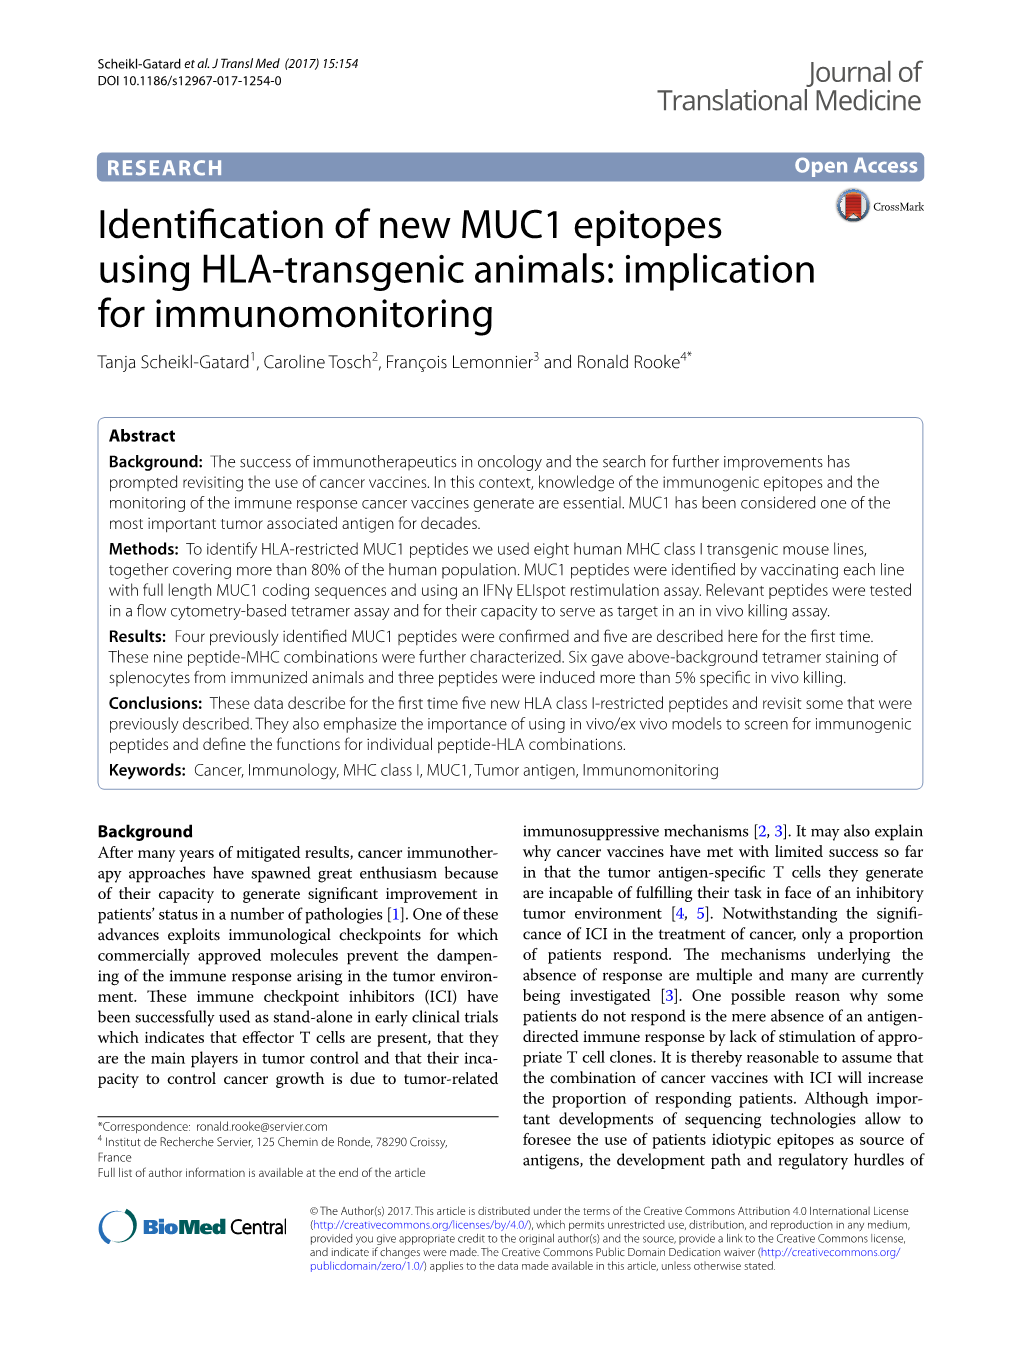 Identification of New MUC1 Epitopes Using HLA-Transgenic Animals